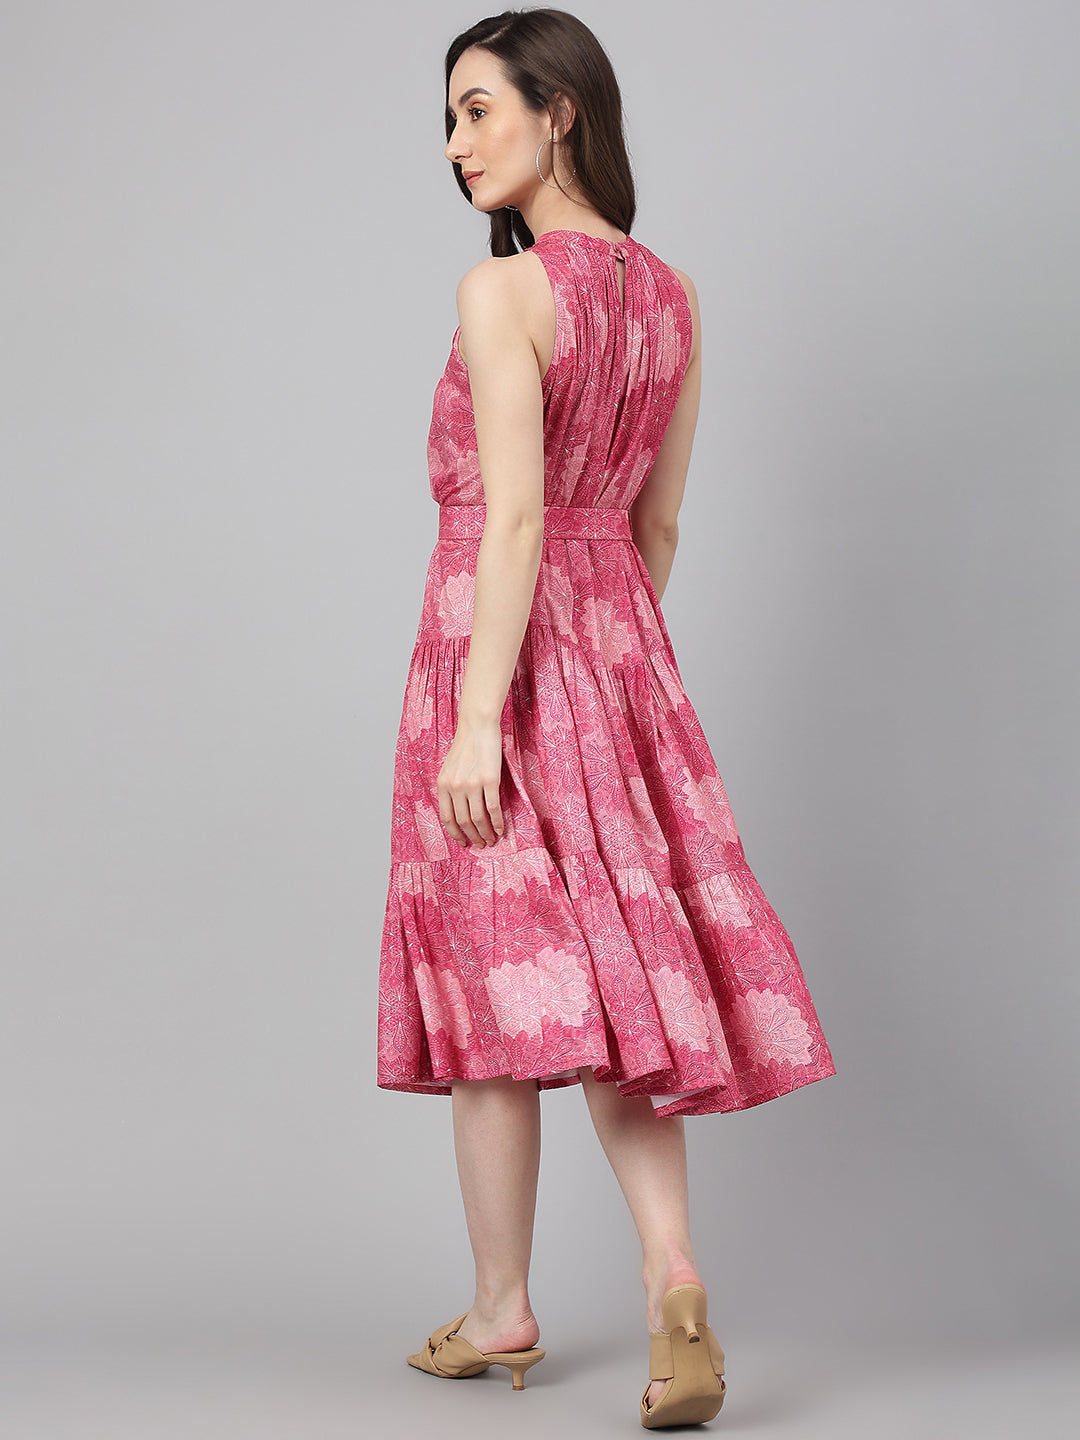 Women's Digital Printed Pink Crepe Dress - Janasya